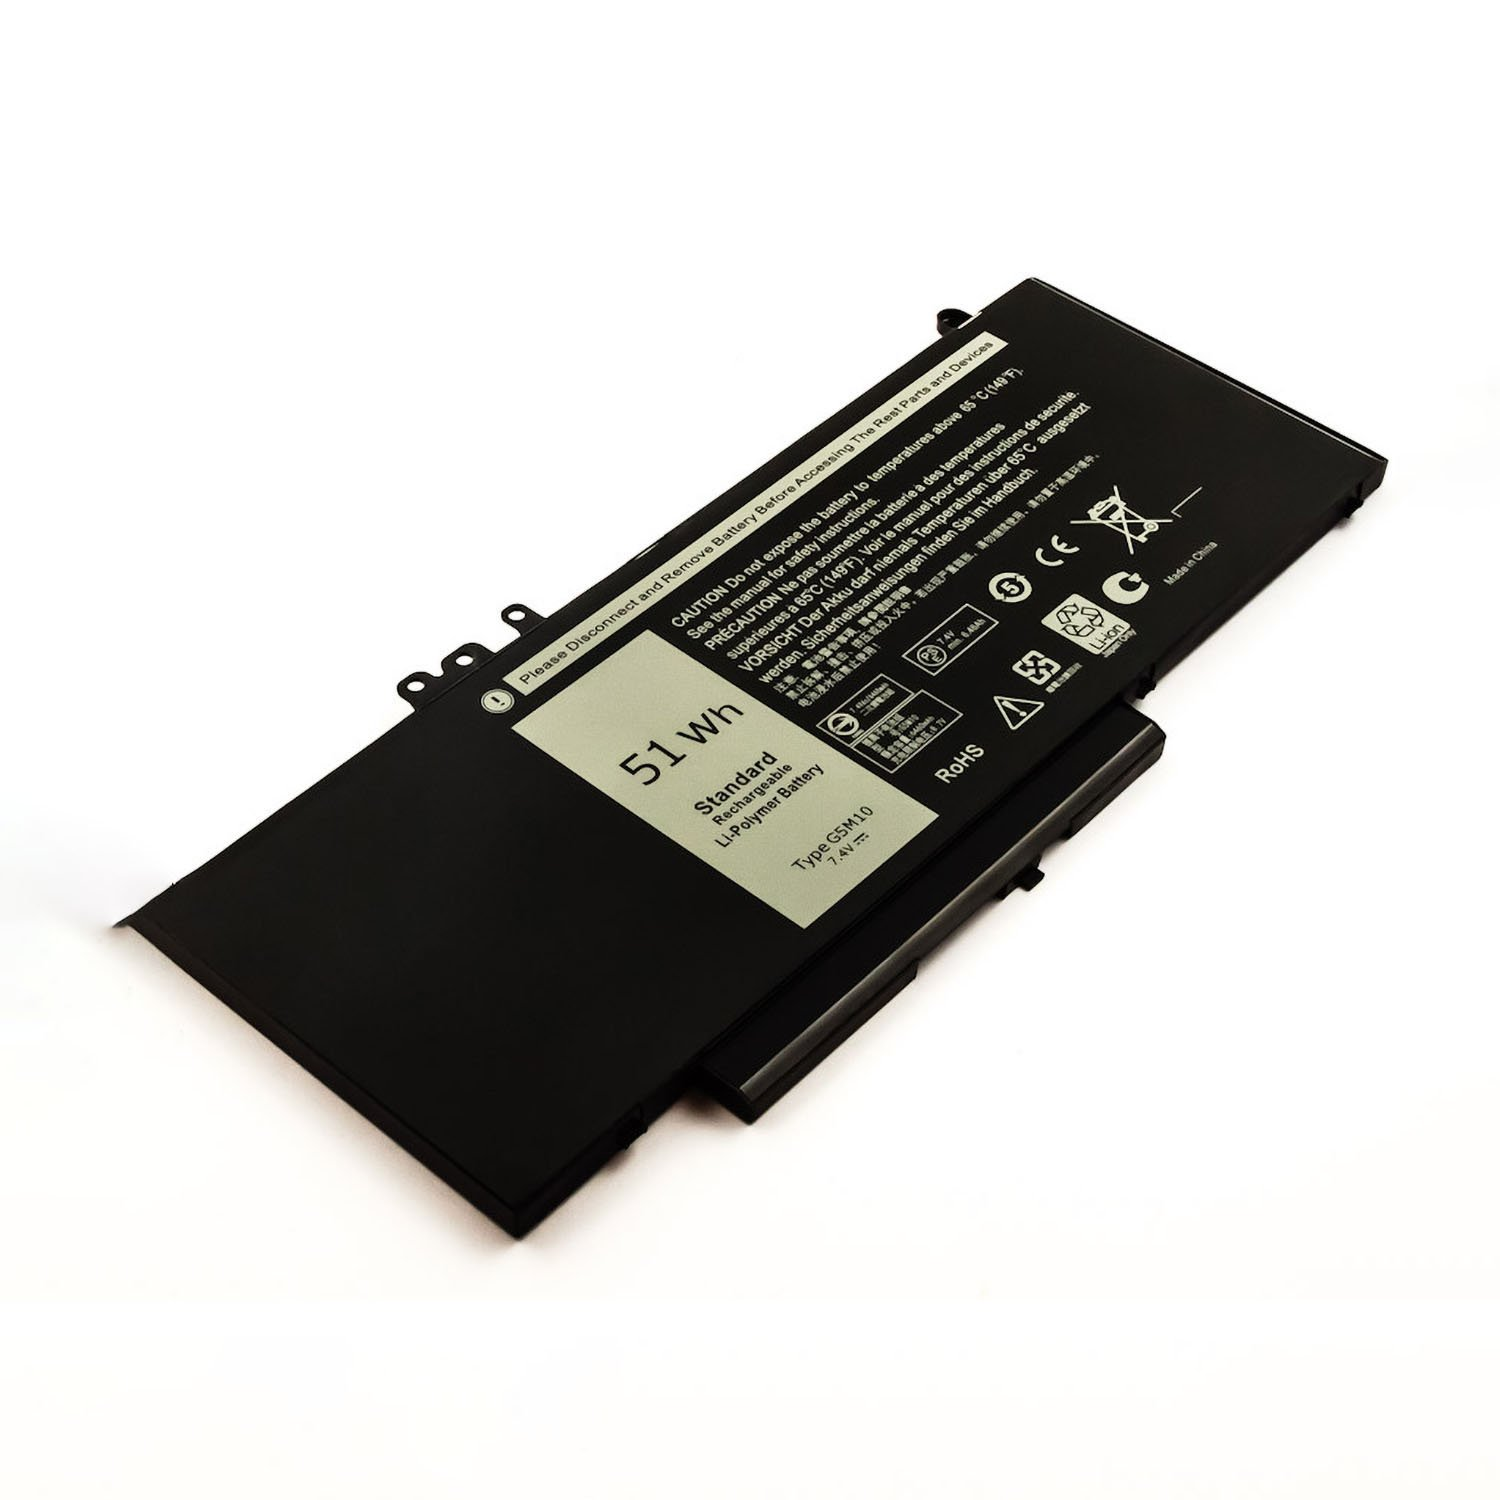 AGI Akku kompatibel mit Li-Pol Notebookakku, Dell G5M10 Volt, mAh 7.4 5800 Li-Pol